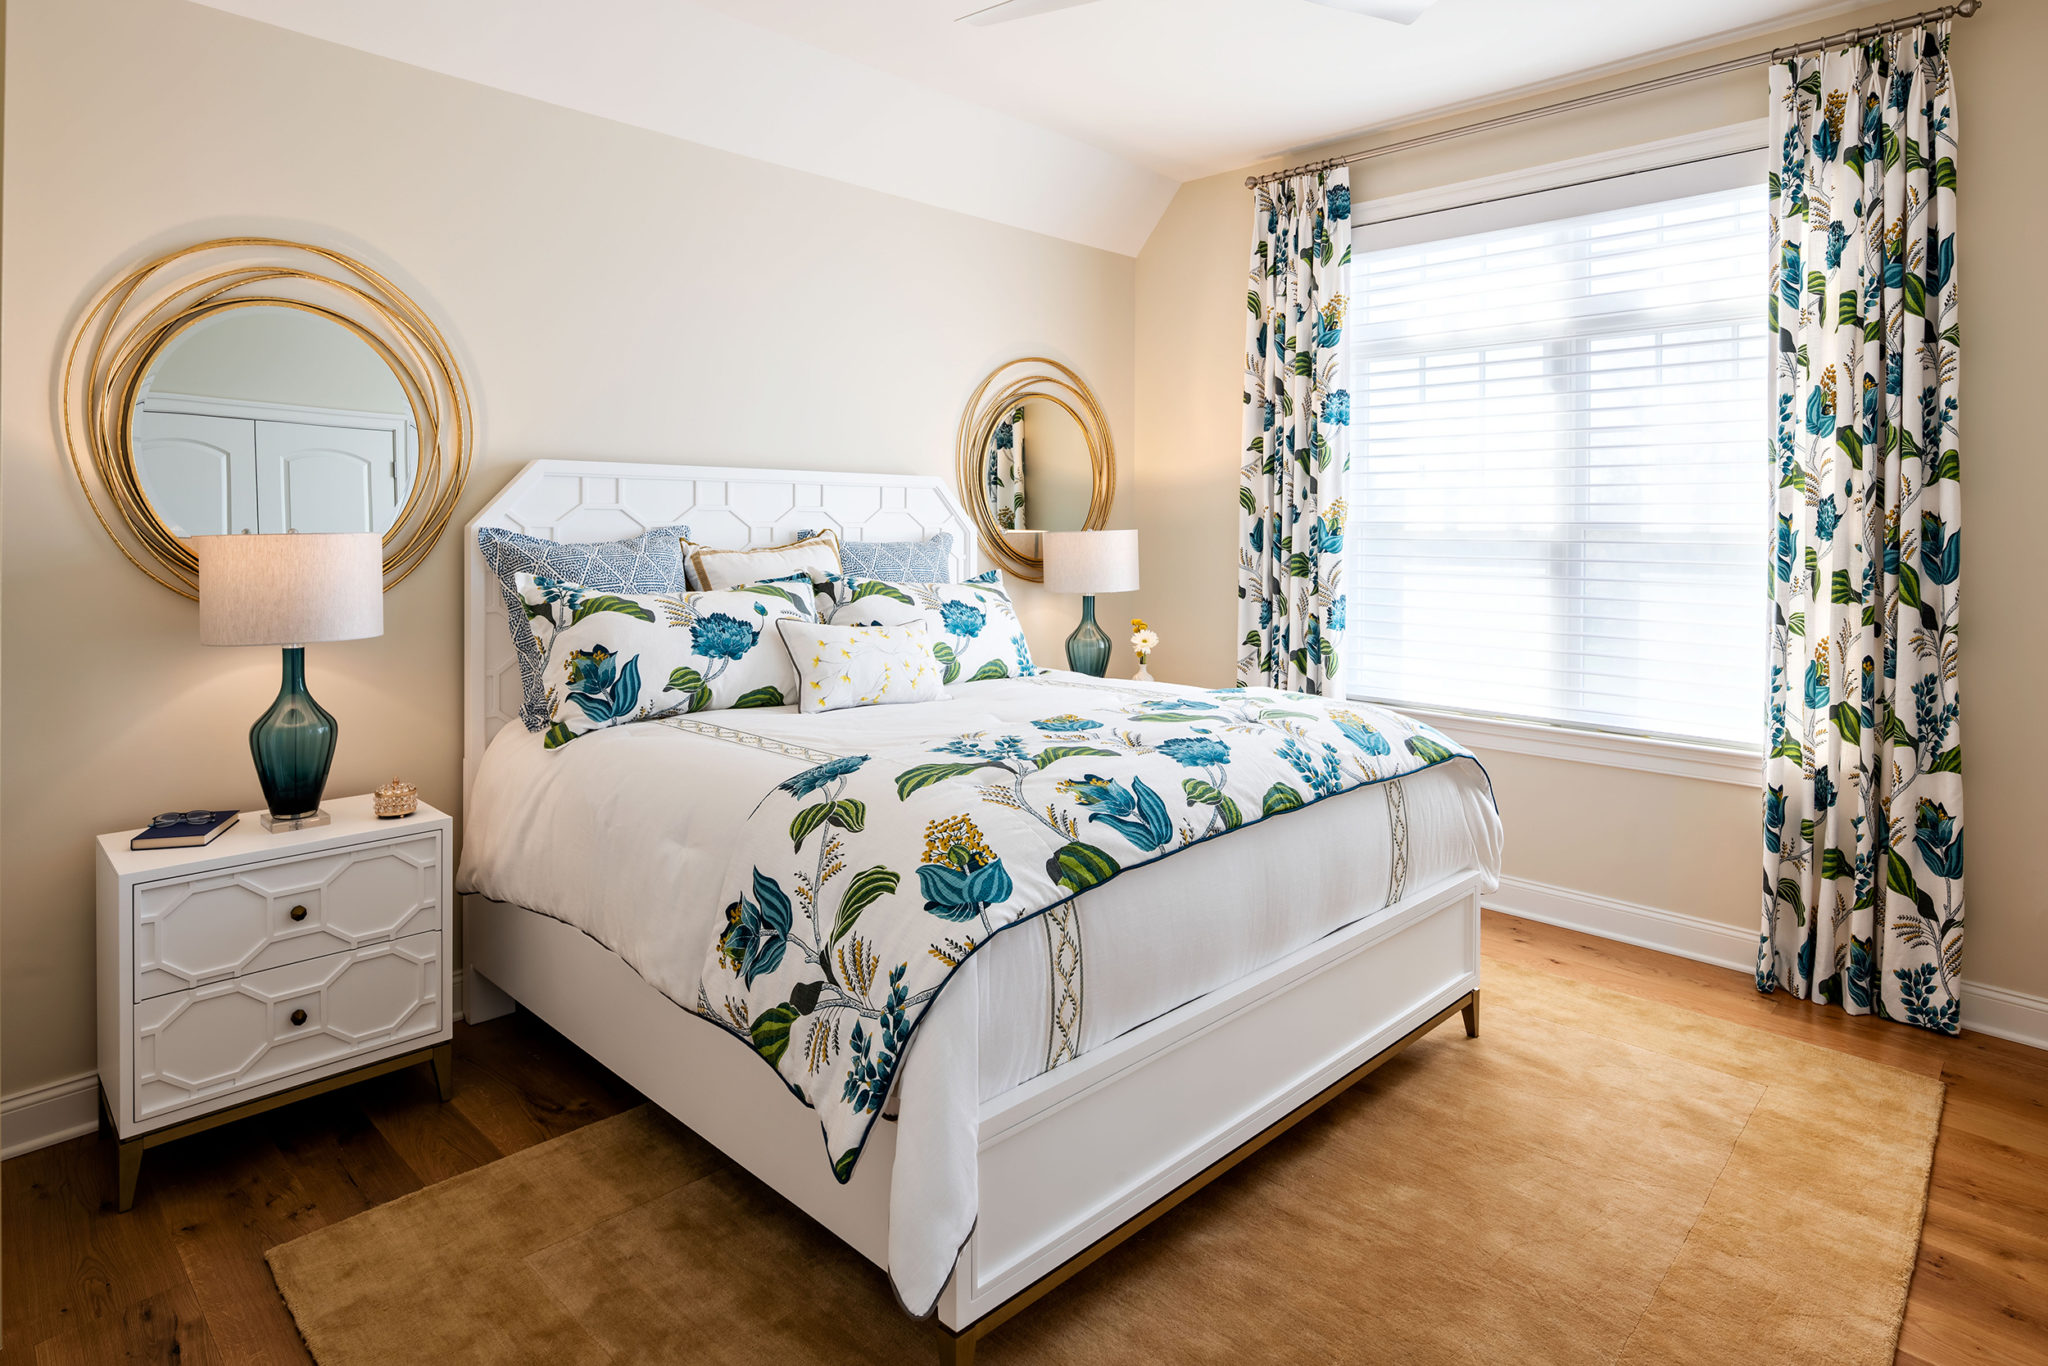 Traditional Bedroom Design, floral design